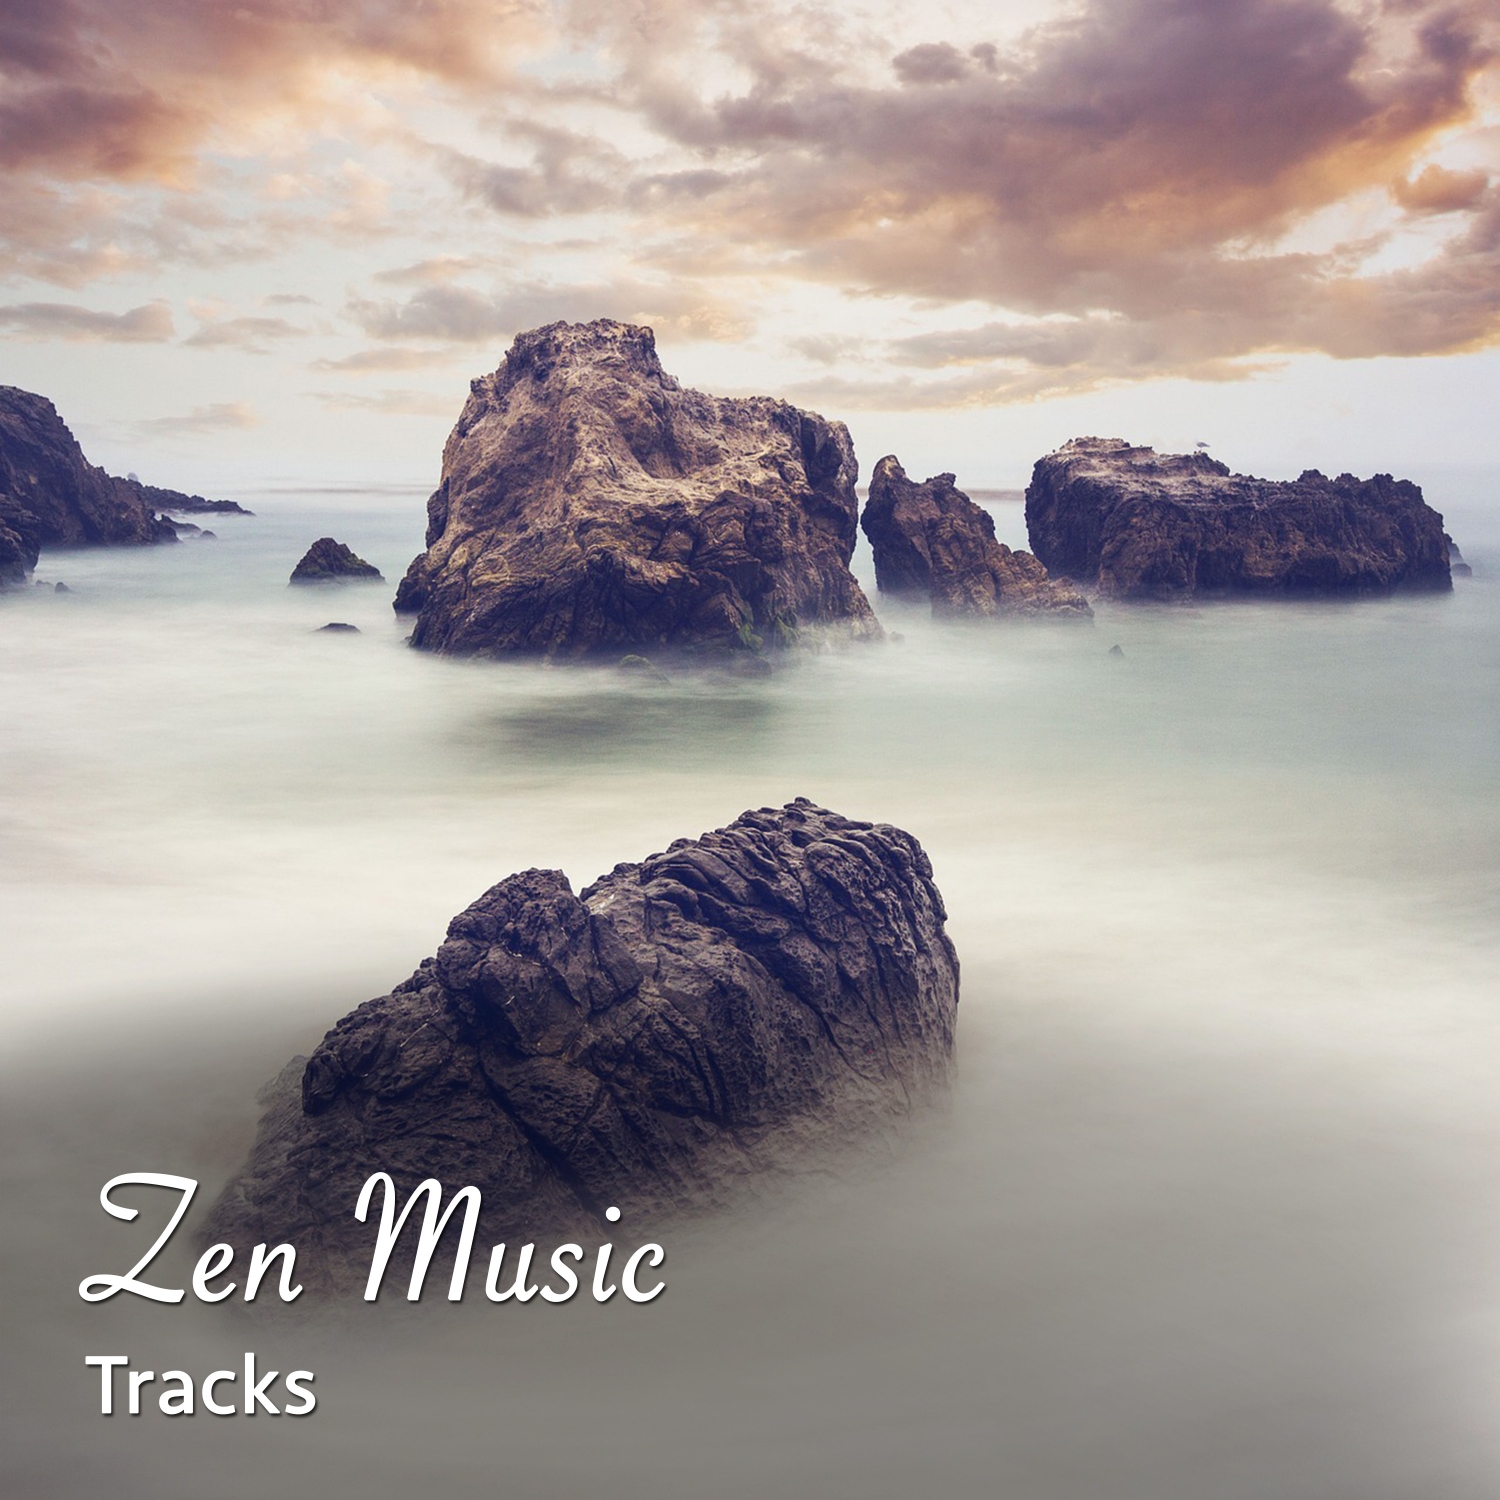 18 Zen Music Tracks. White Noise Background Music